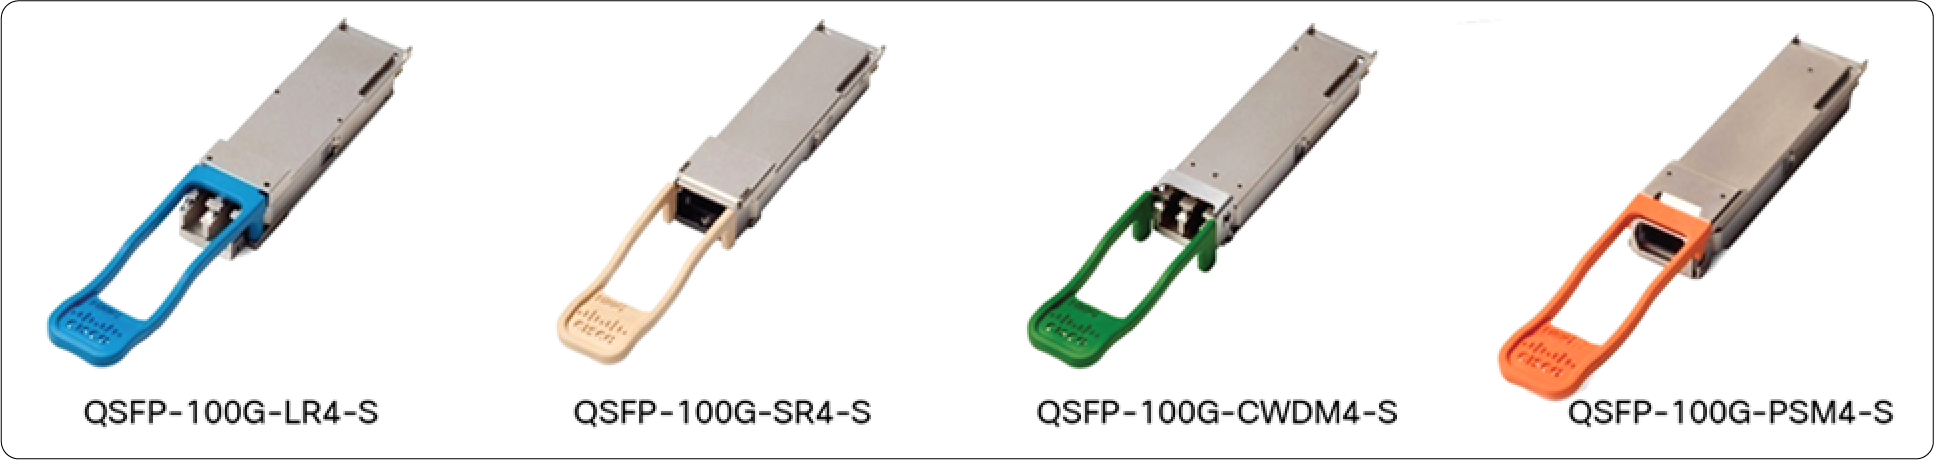 QSFP-100G Optical modules